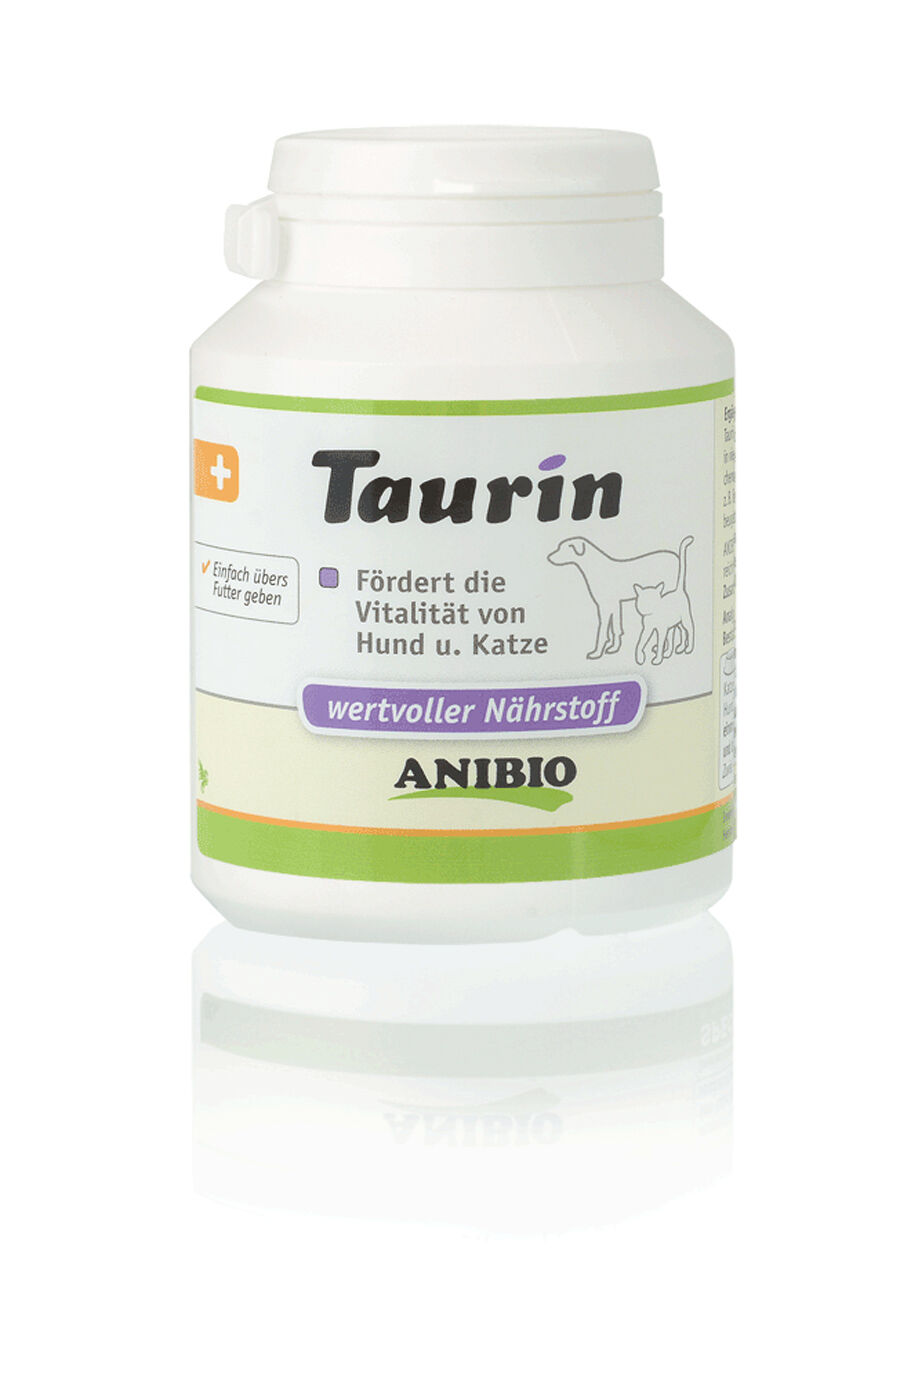 Anibio-Taurin-pulver-katze-vitalitaet-foerdern-SB-77711